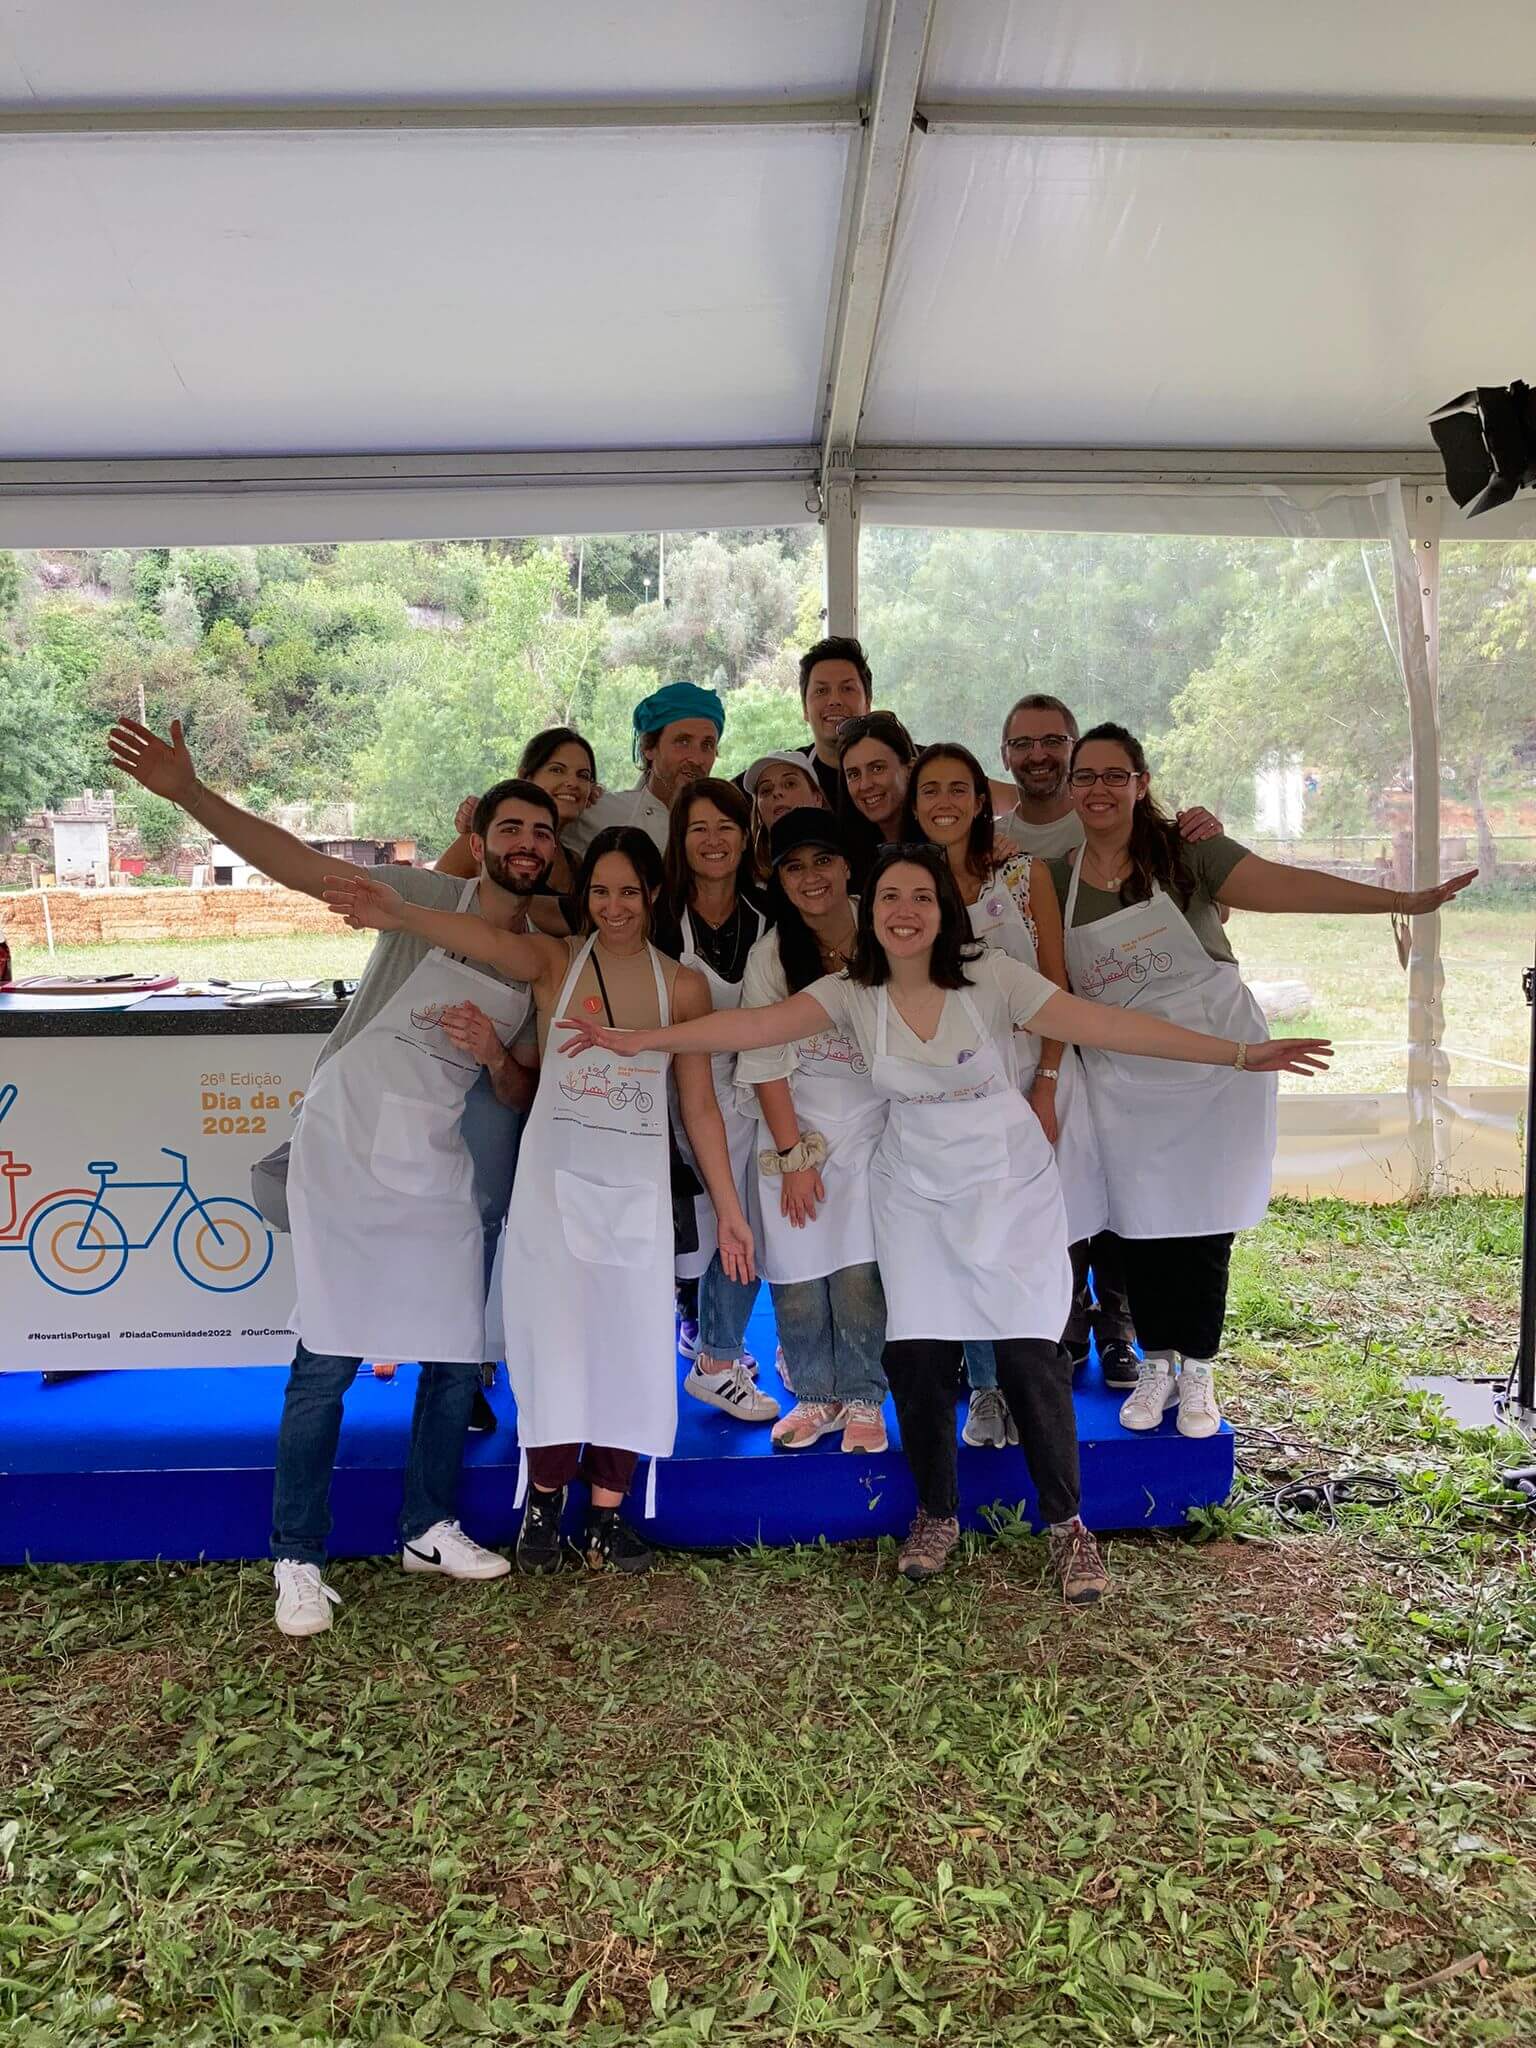 Equipa Sandoz no Dia da Comunidade 2022, evento de voluntariado com a Semear e a Refood